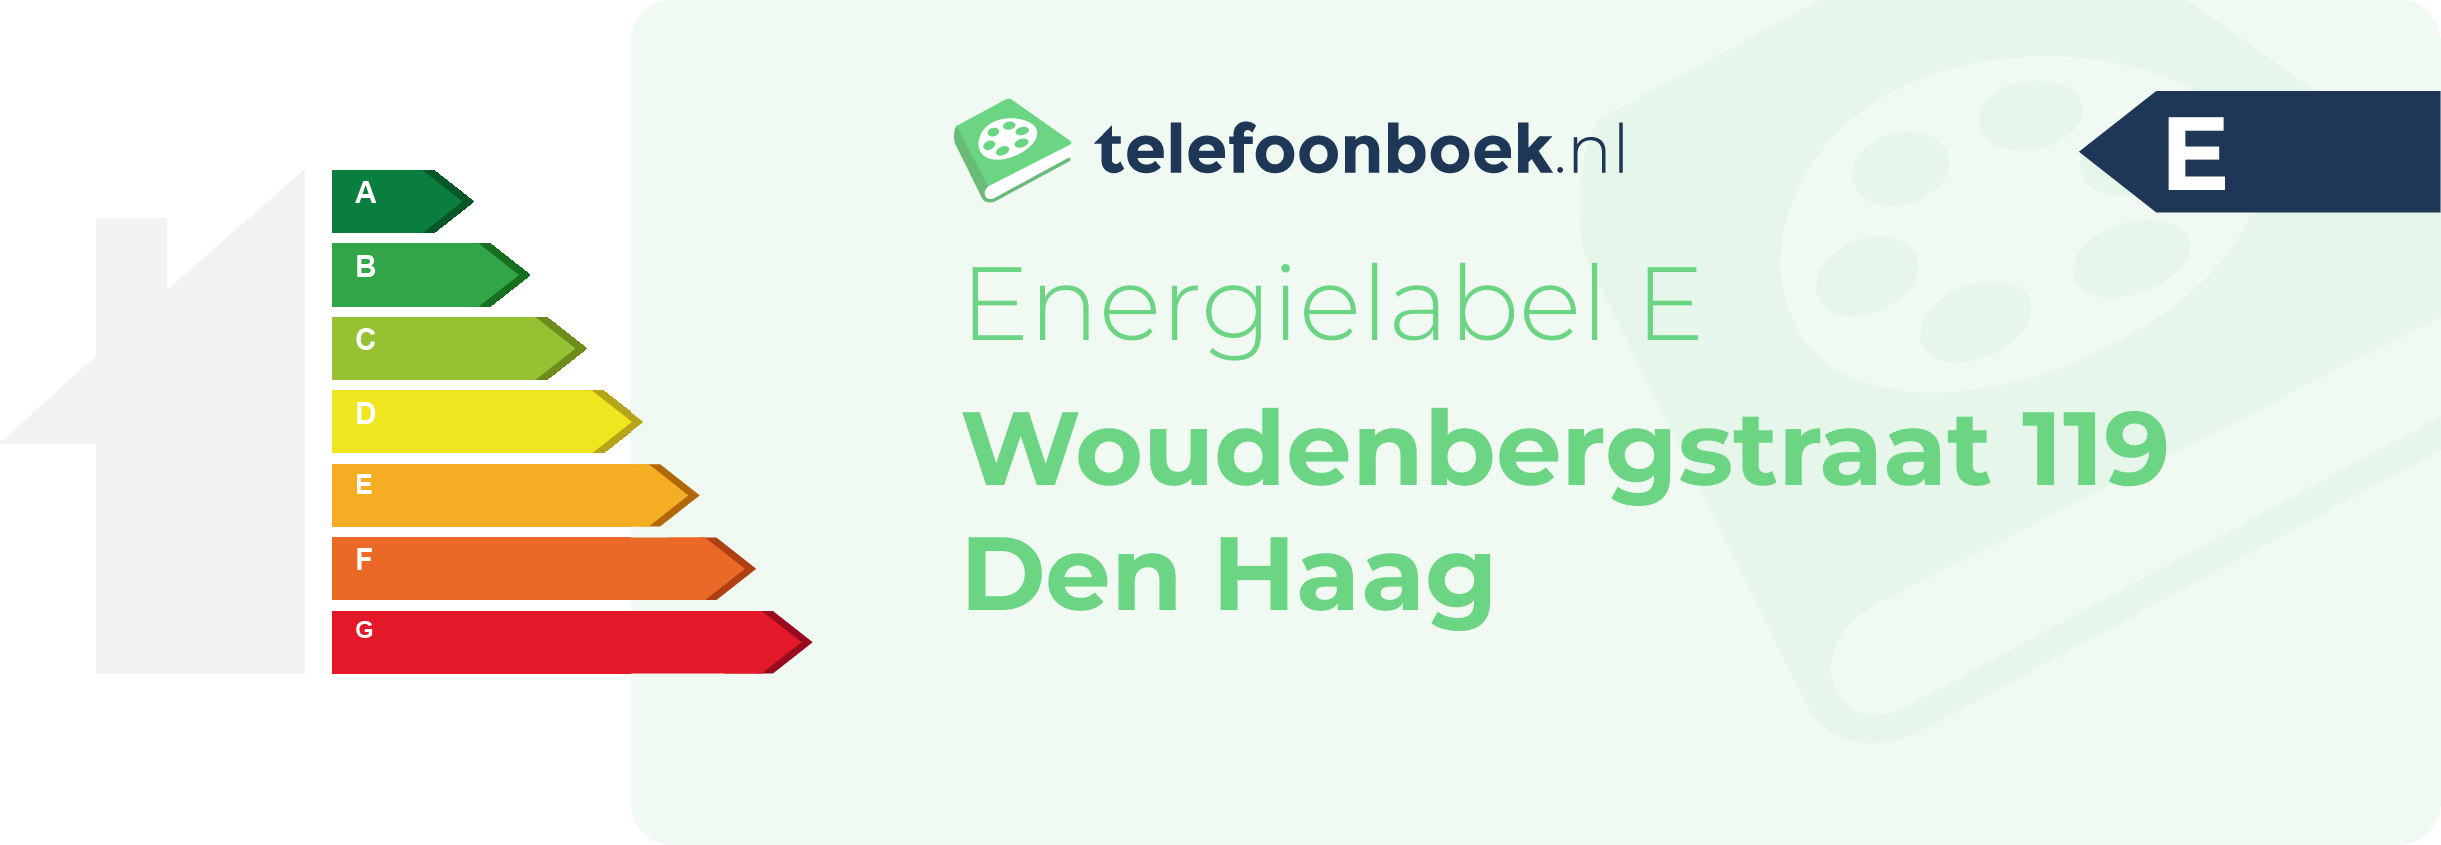 Energielabel Woudenbergstraat 119 Den Haag